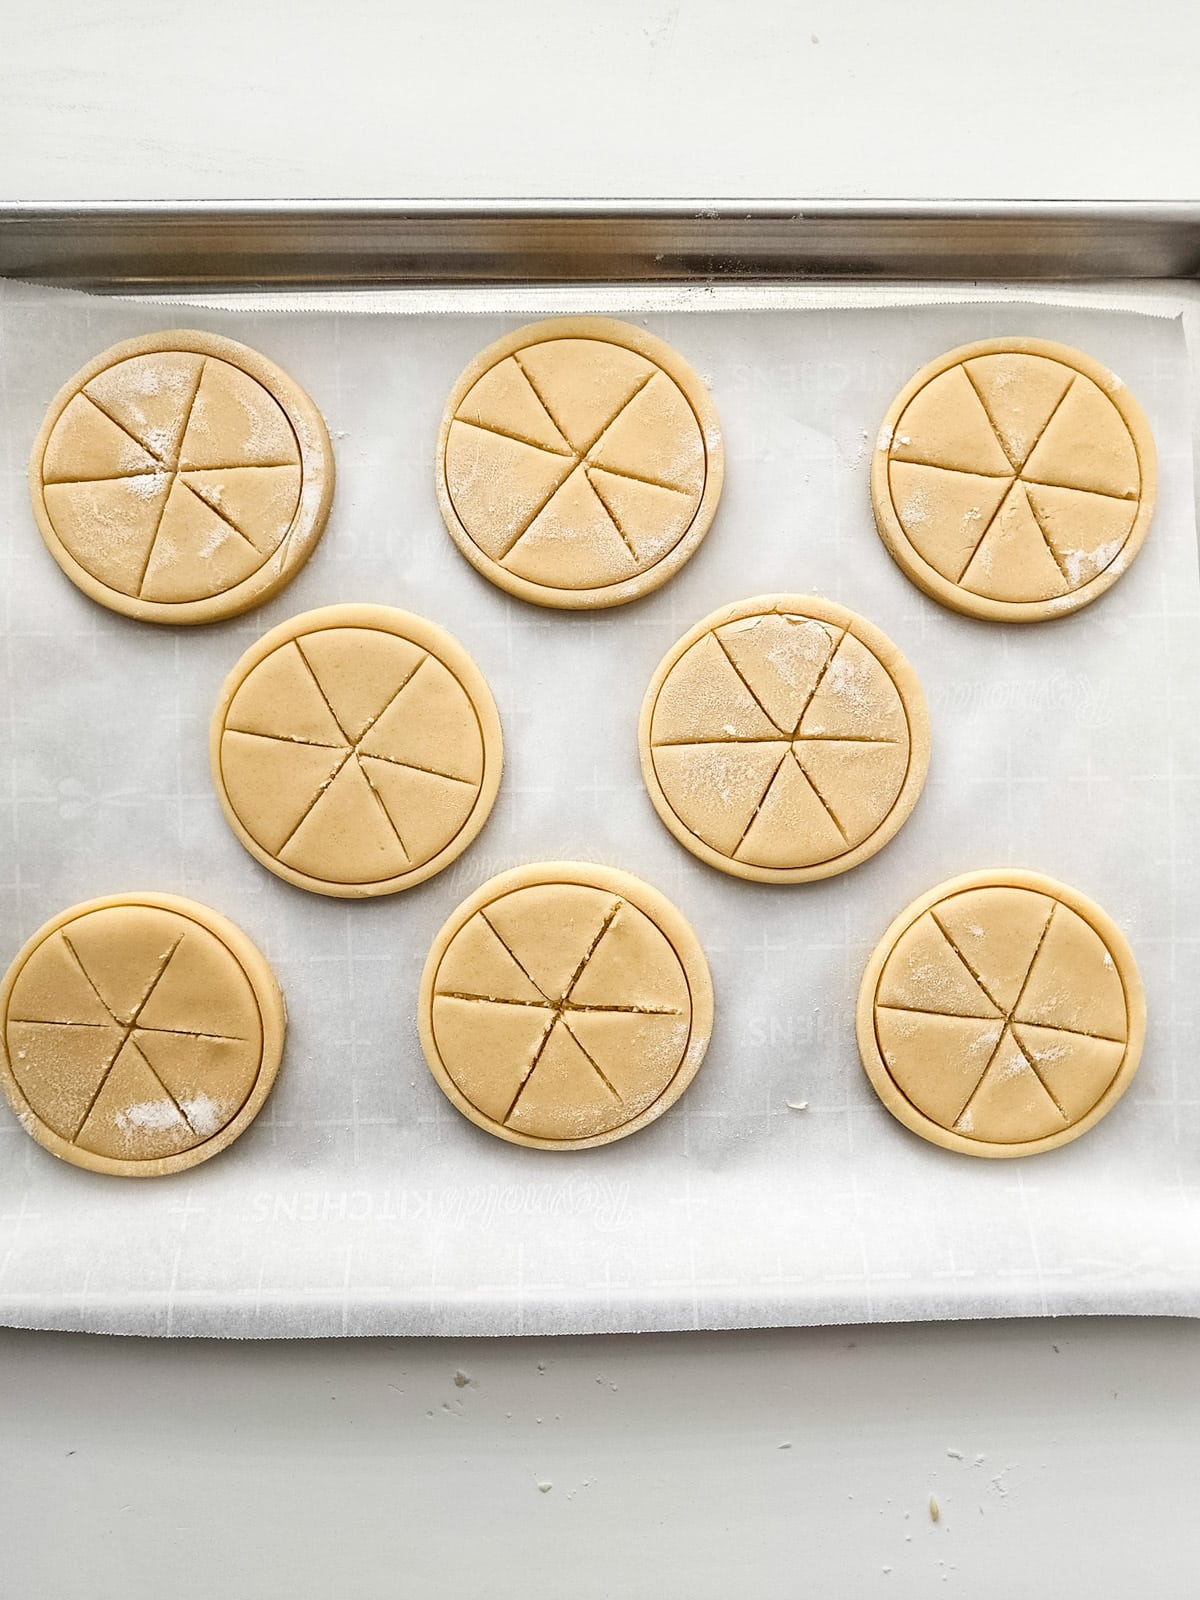 Lines imprinted across cookies